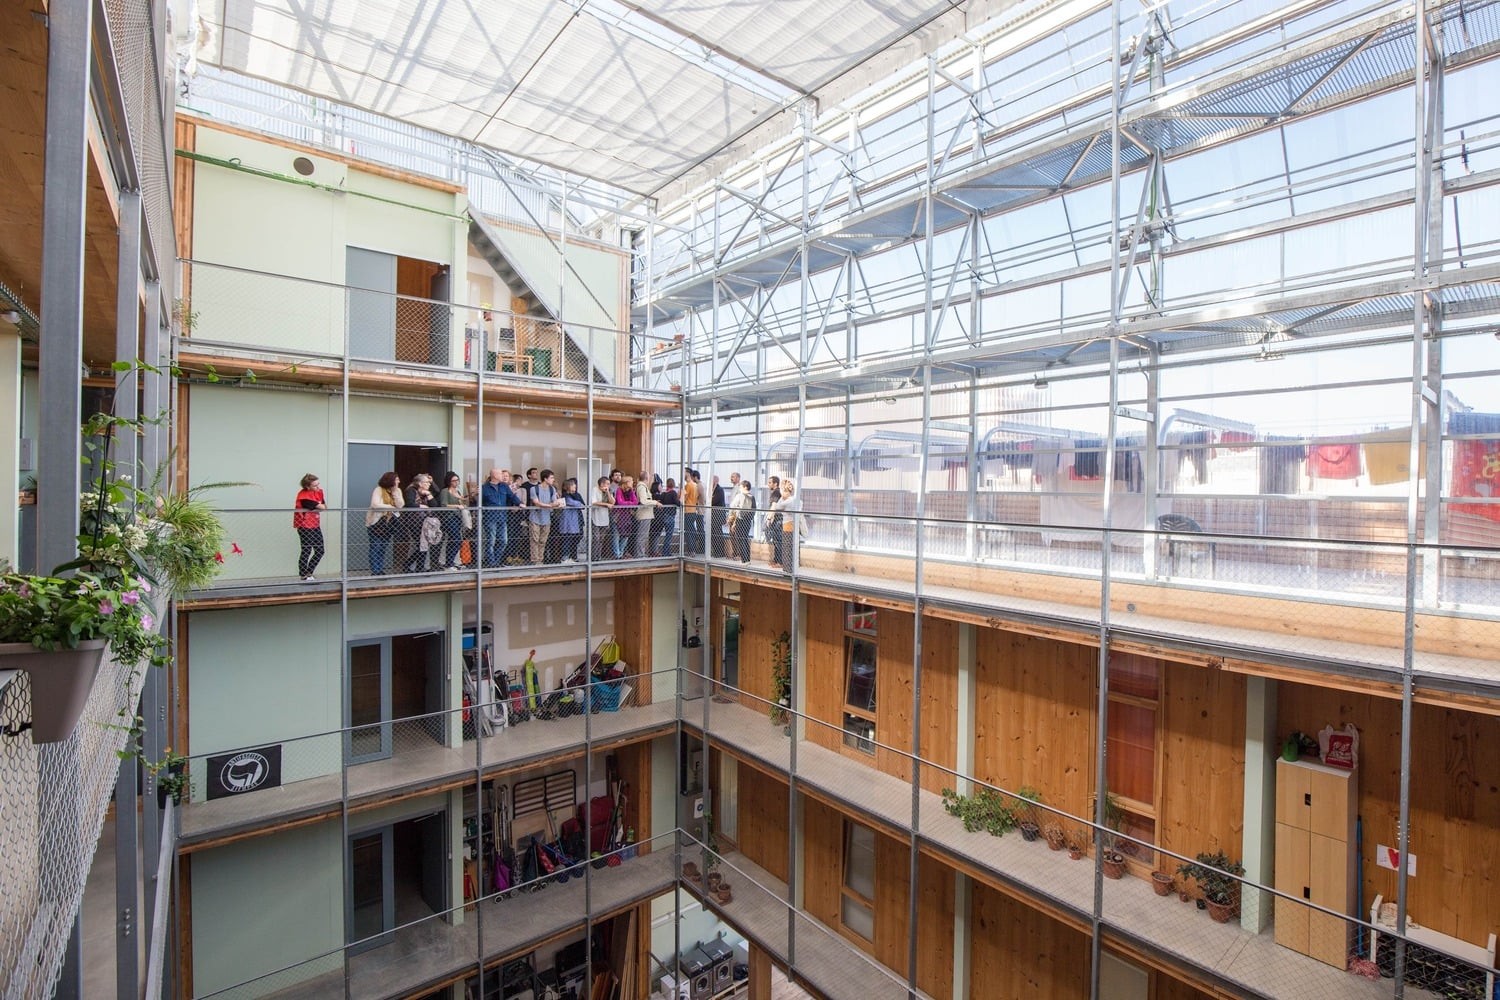 Kdo se utká ve finále evropské architektonické ceny EU Mies Award 